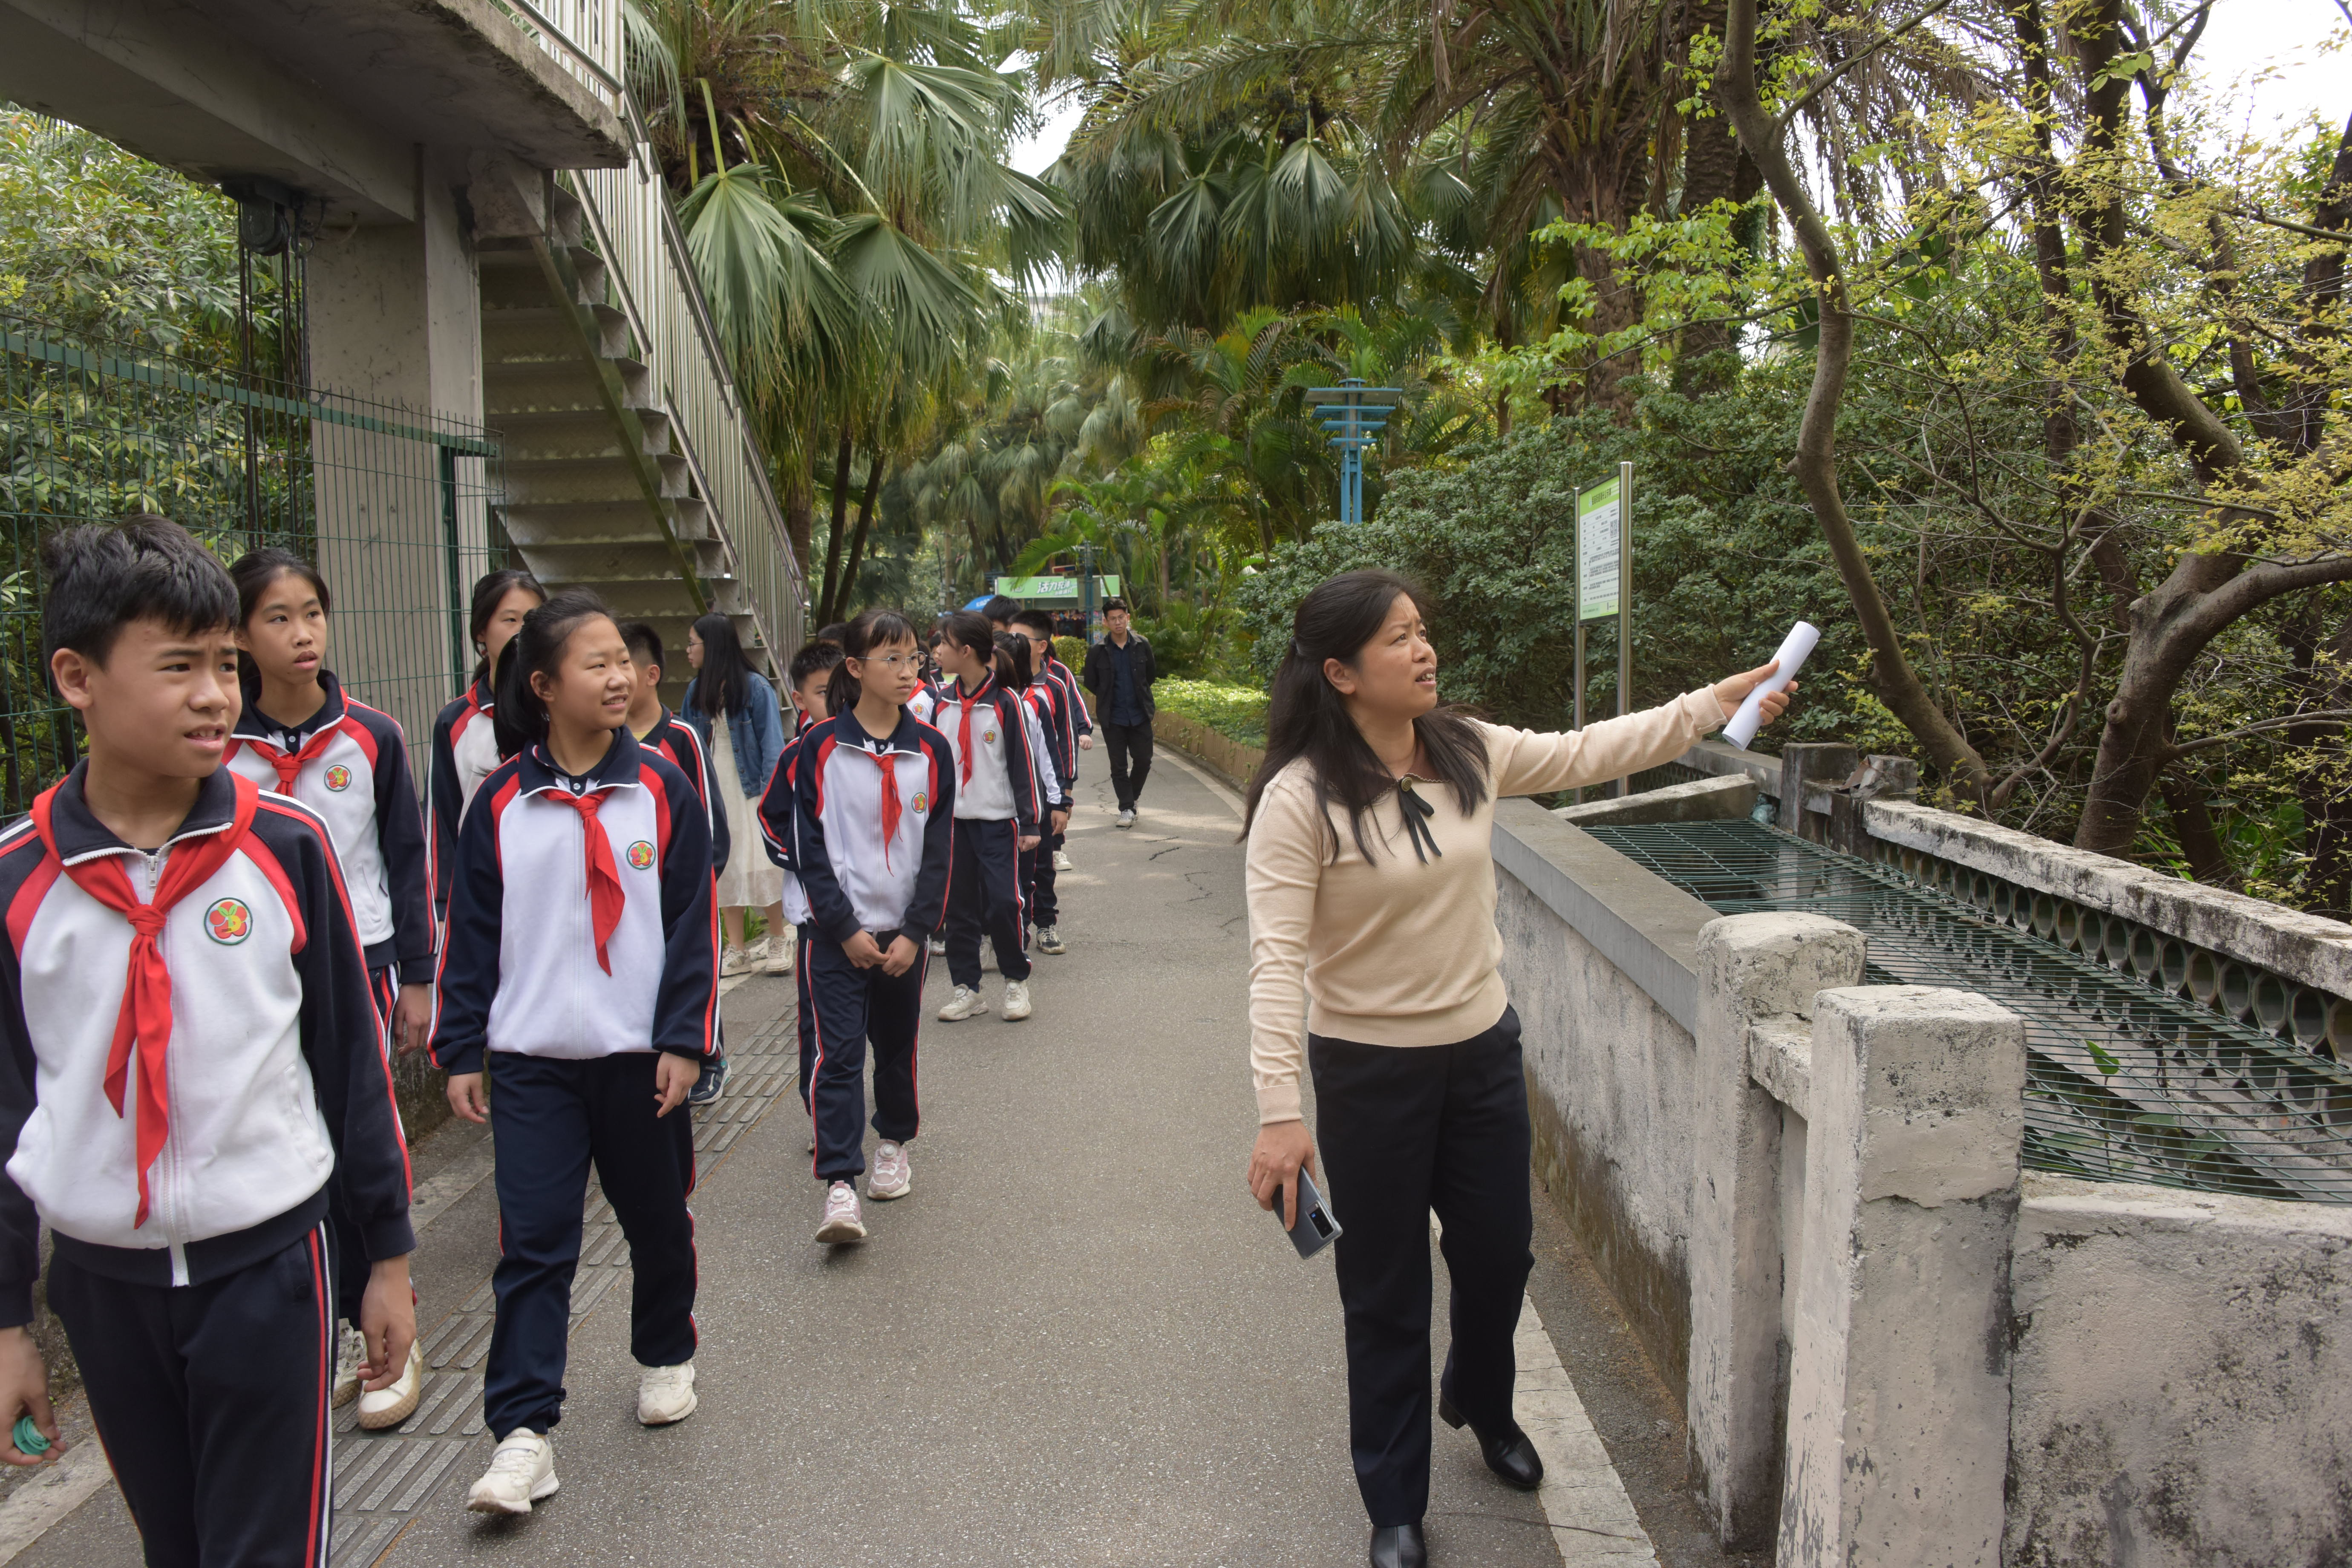 园林中心公园管理室主任陈洁英向同学们介绍公园历史和植物知识2